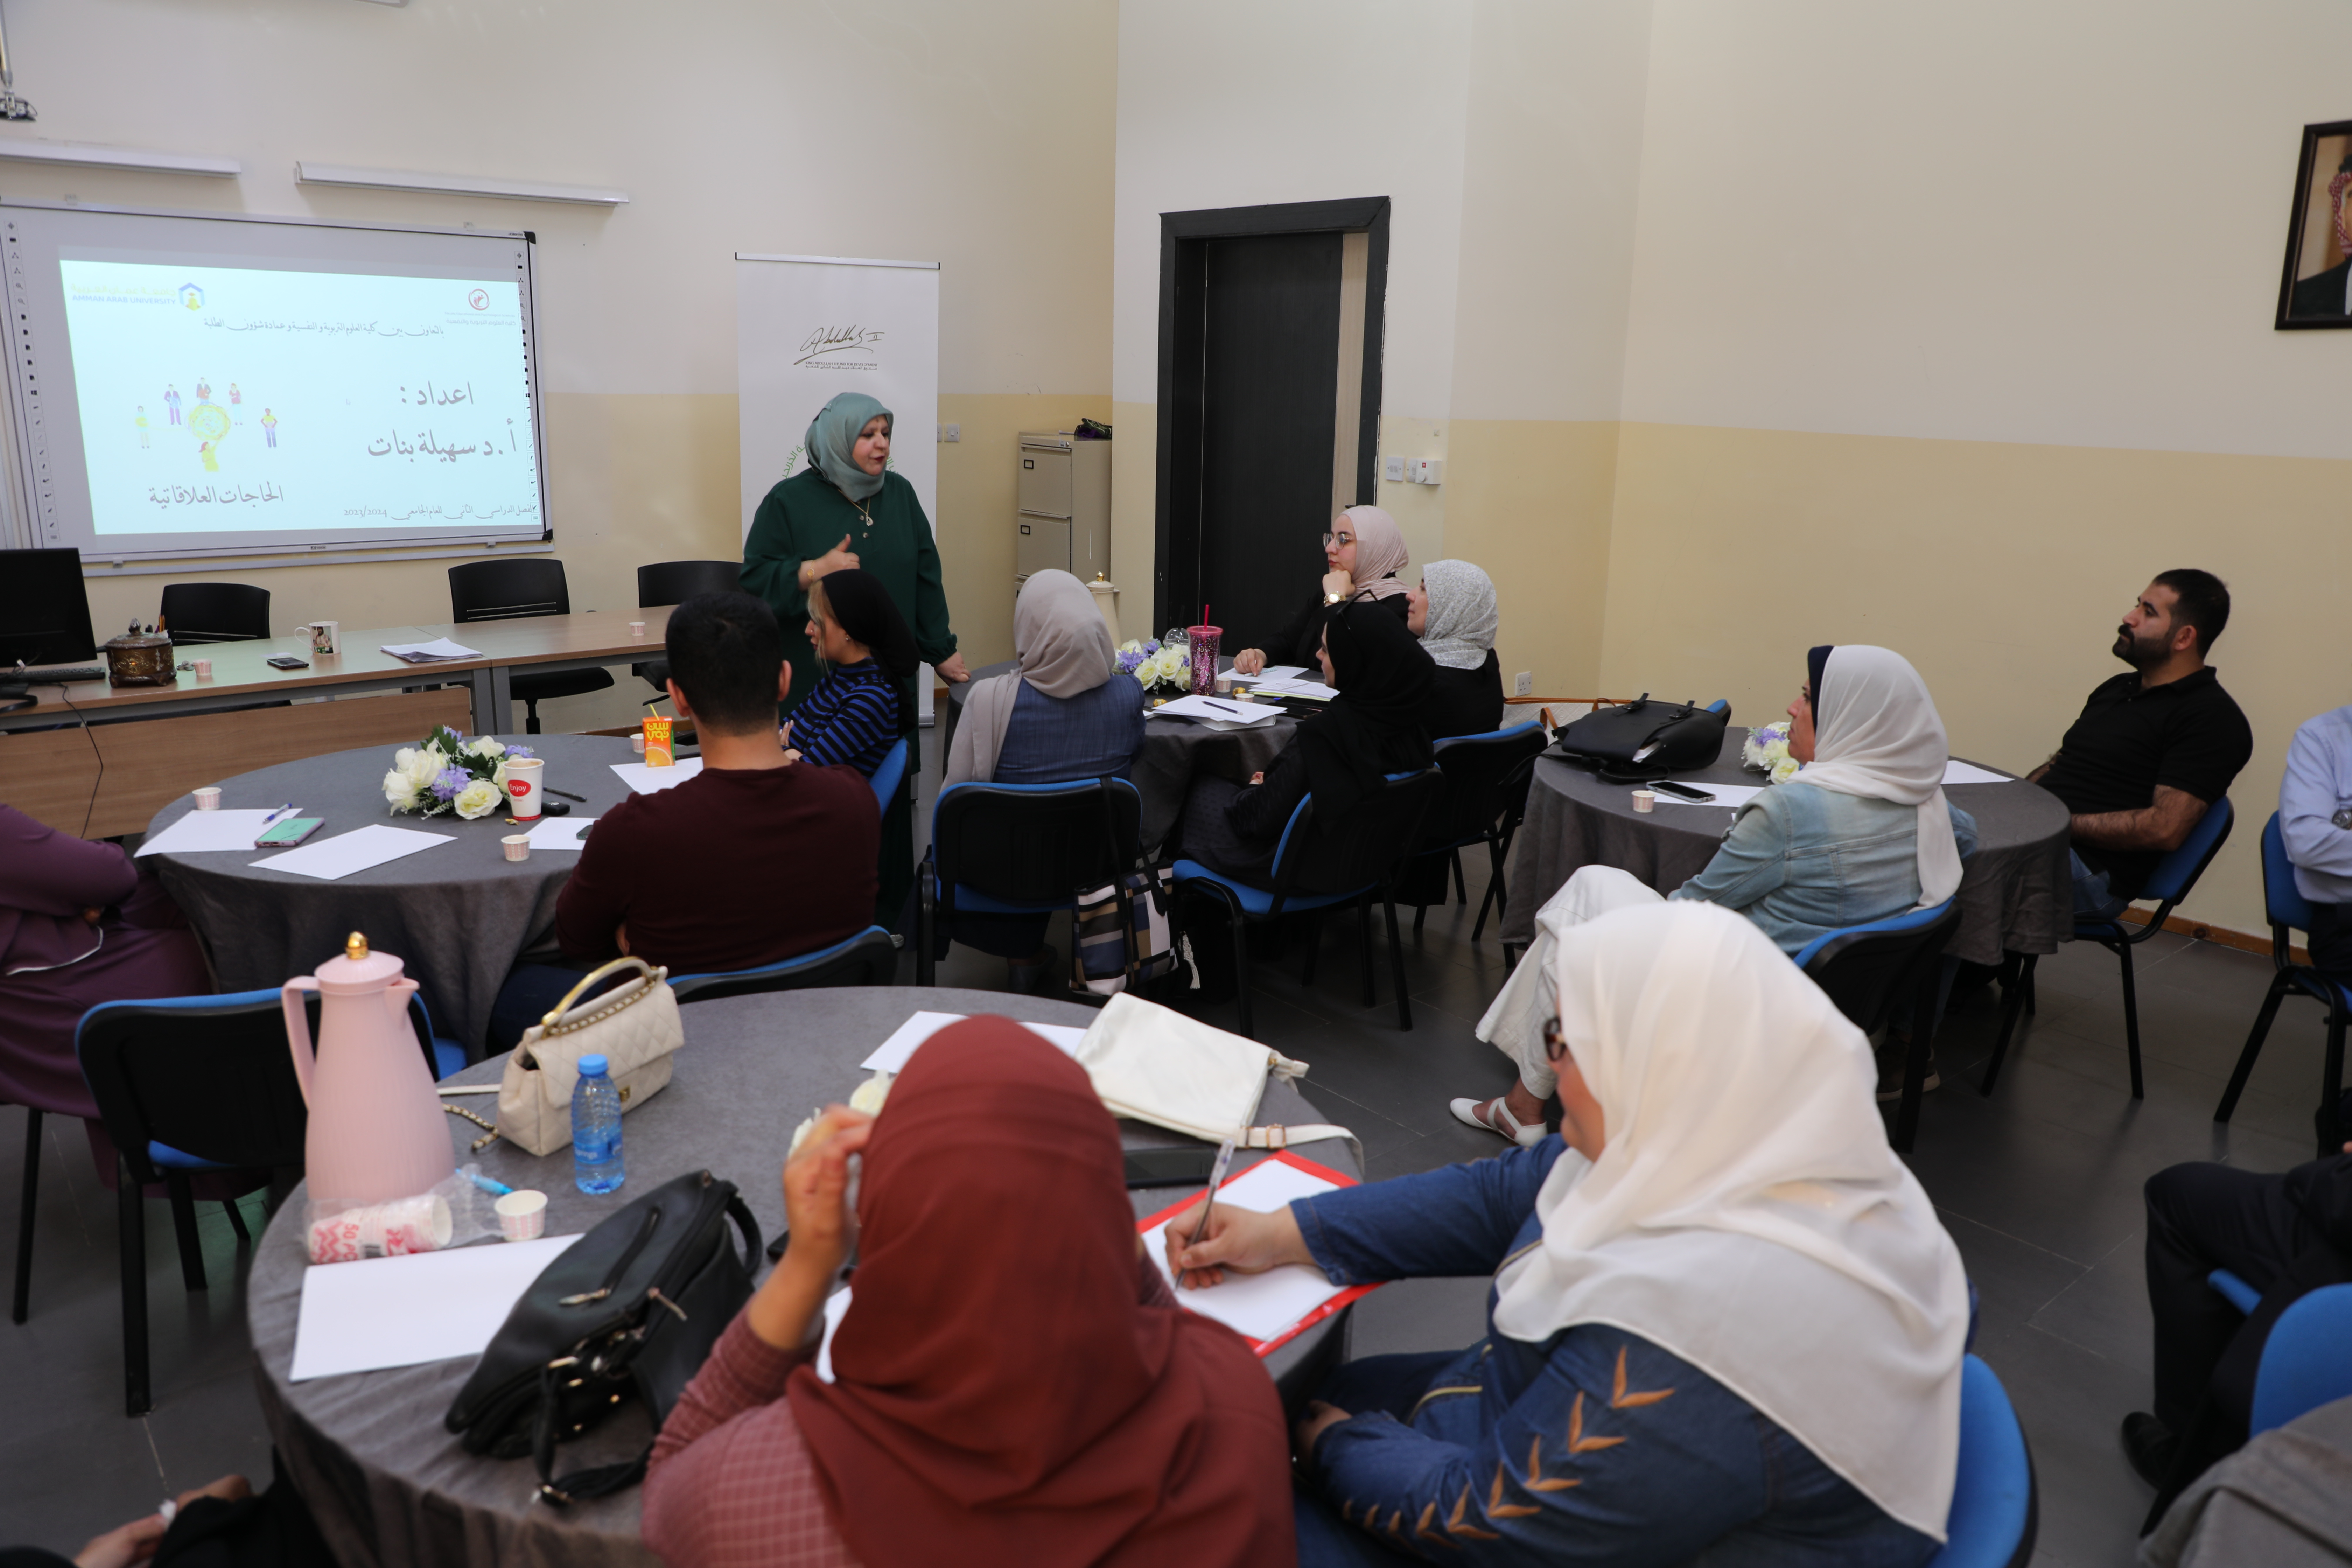 ورشة تدريبية حول " الحاجات العلاقاتية " في "عمان العربية"3